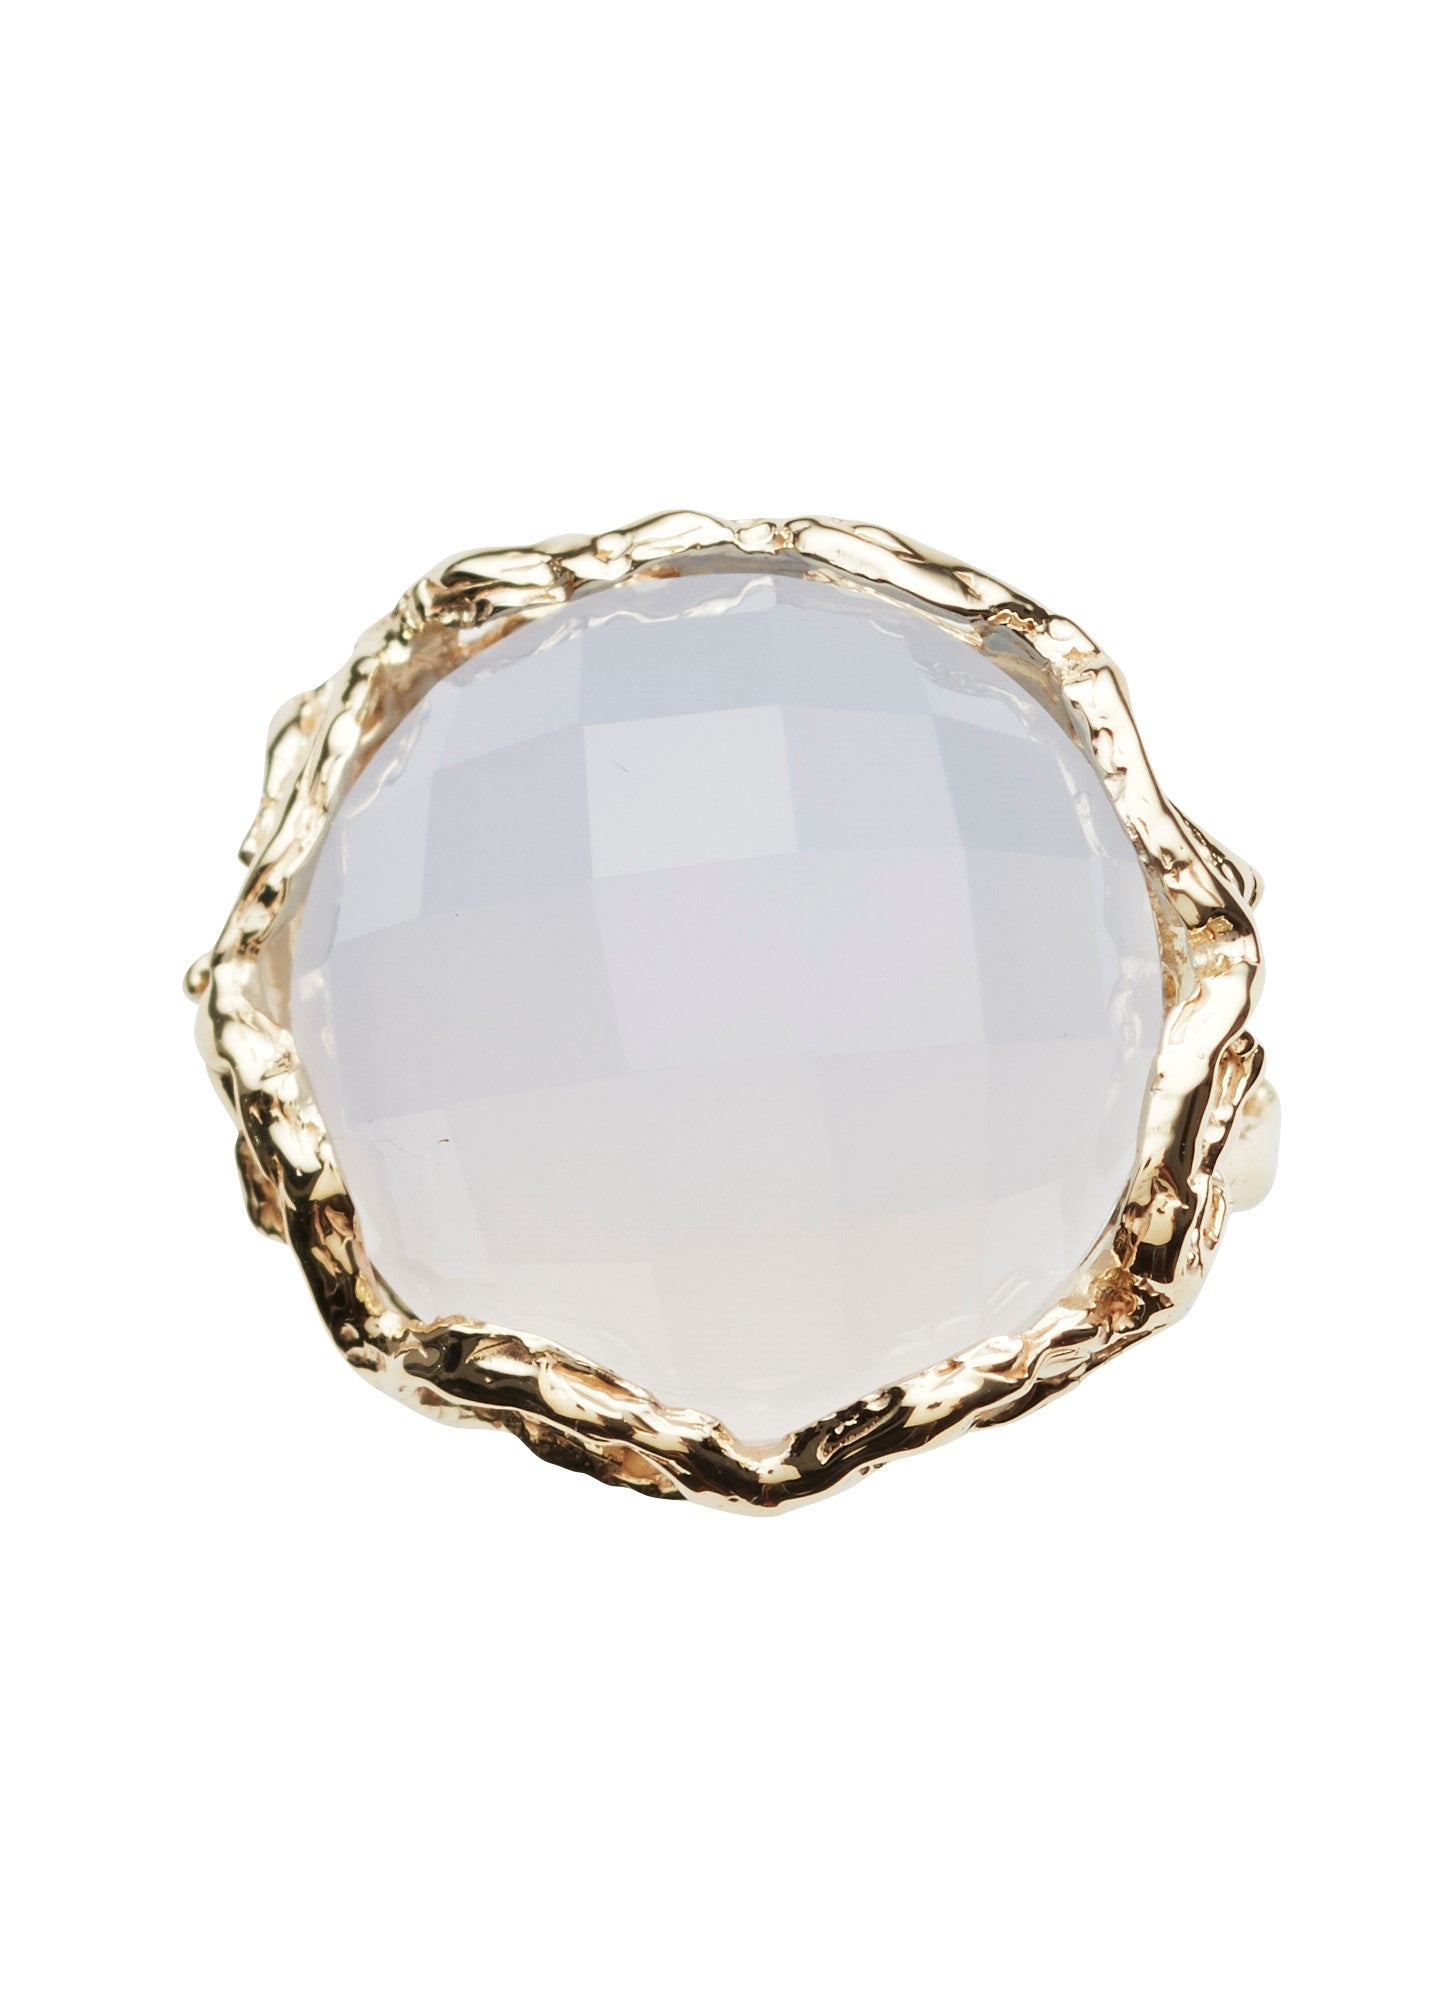 Bon Bon Royal ring faceted quartz